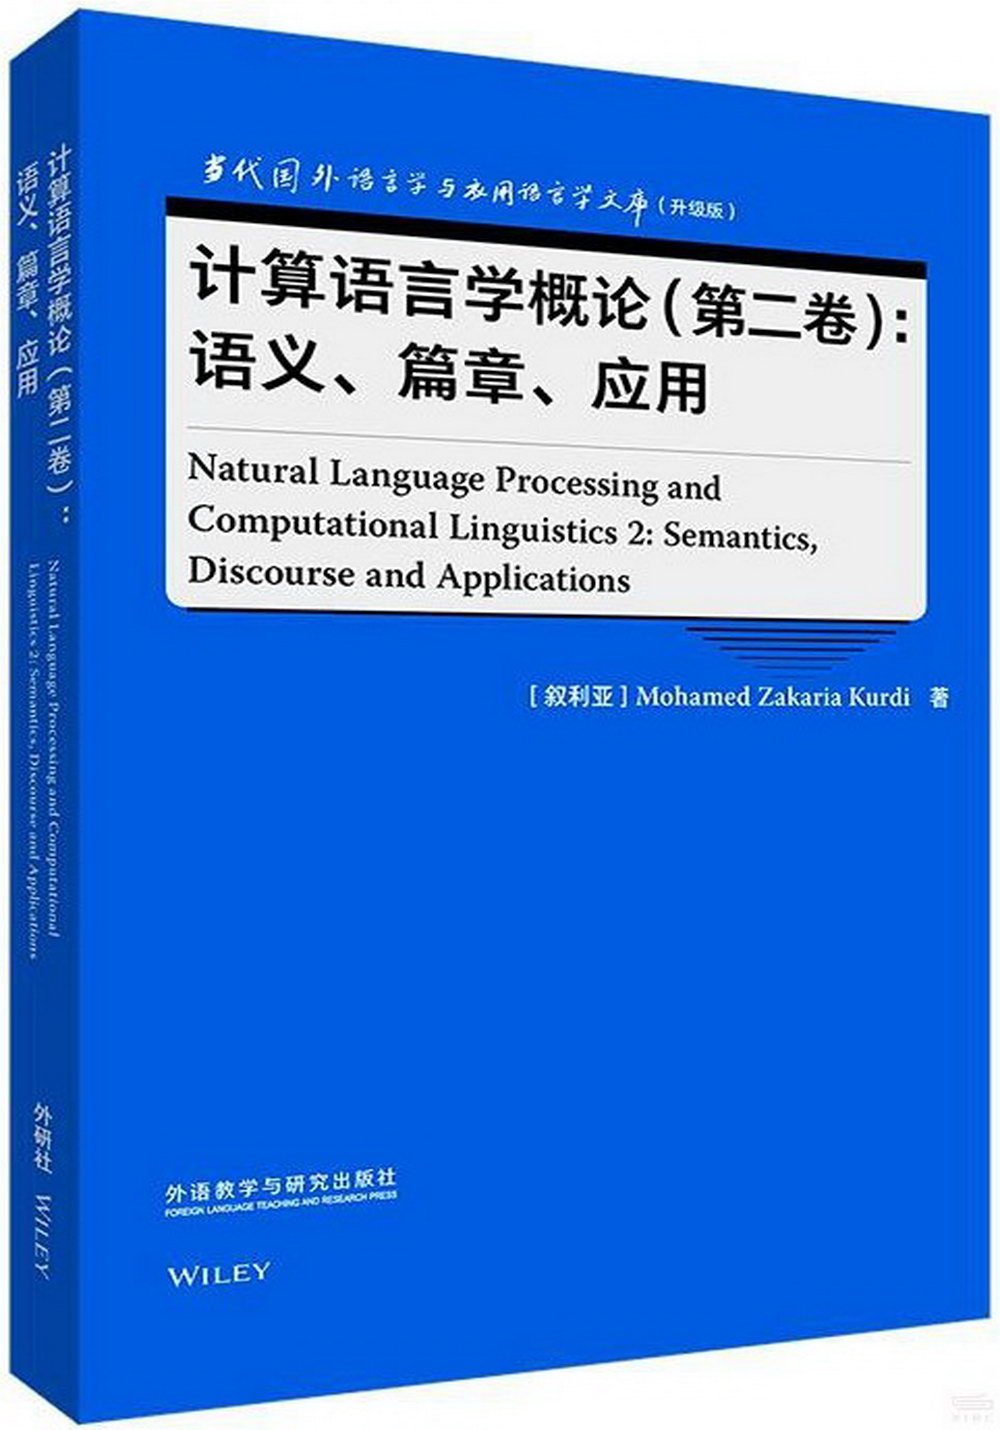 計算語言學概論（第二卷）：語義、篇章、應用